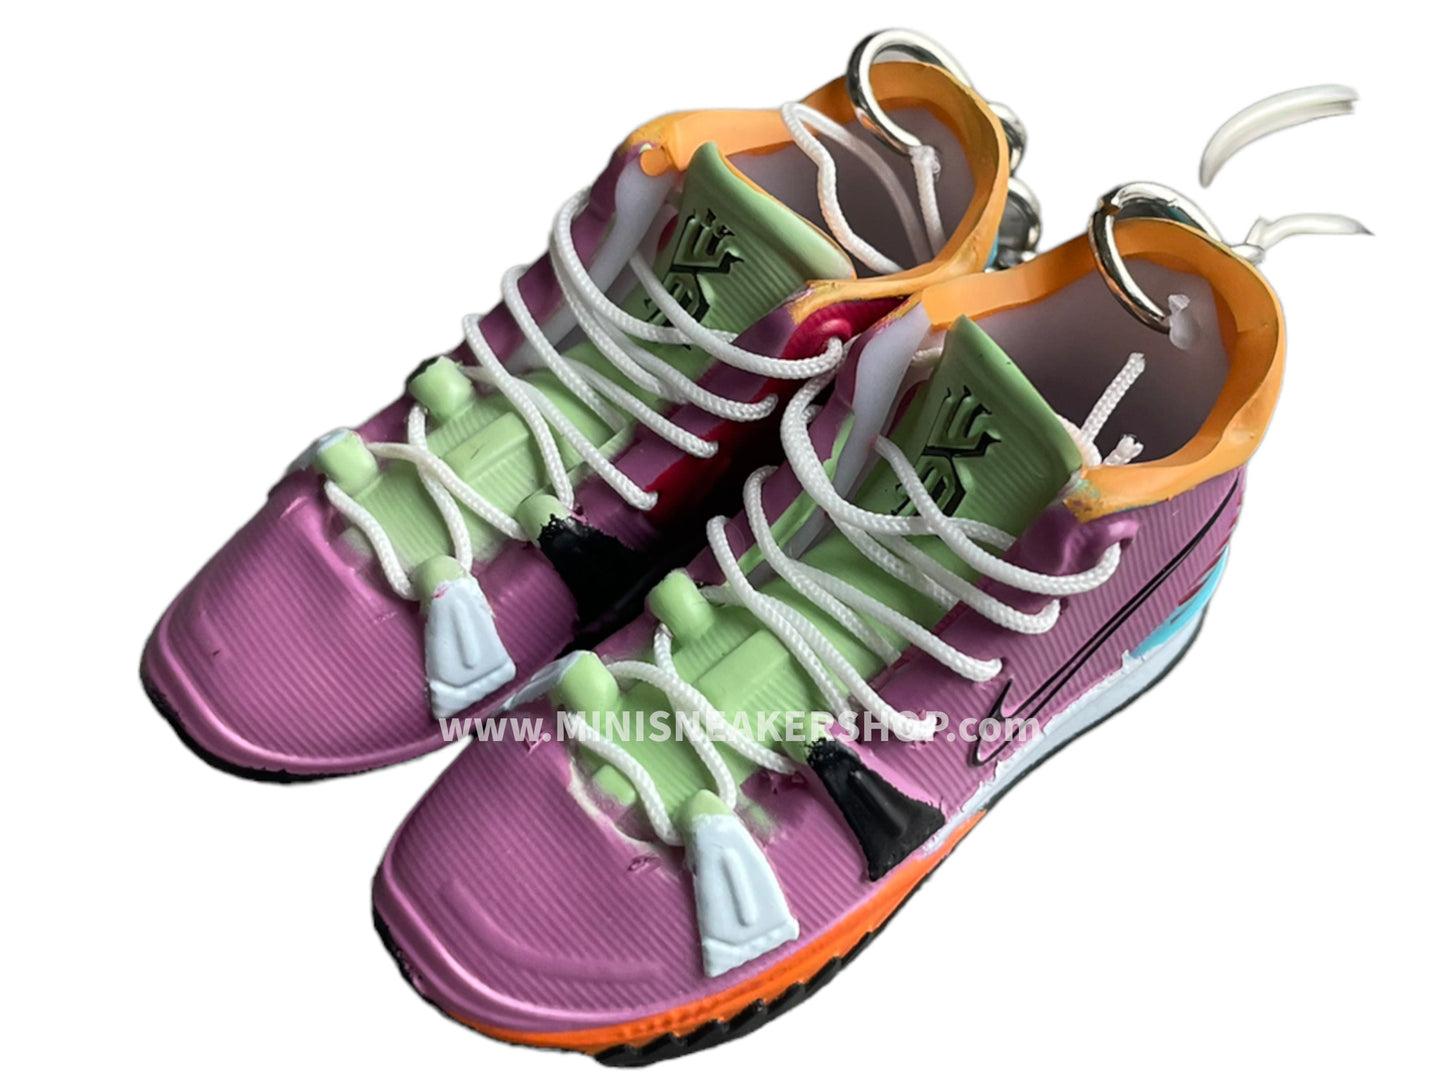 Mini sneaker keychain 3D Nike Kyrie multi